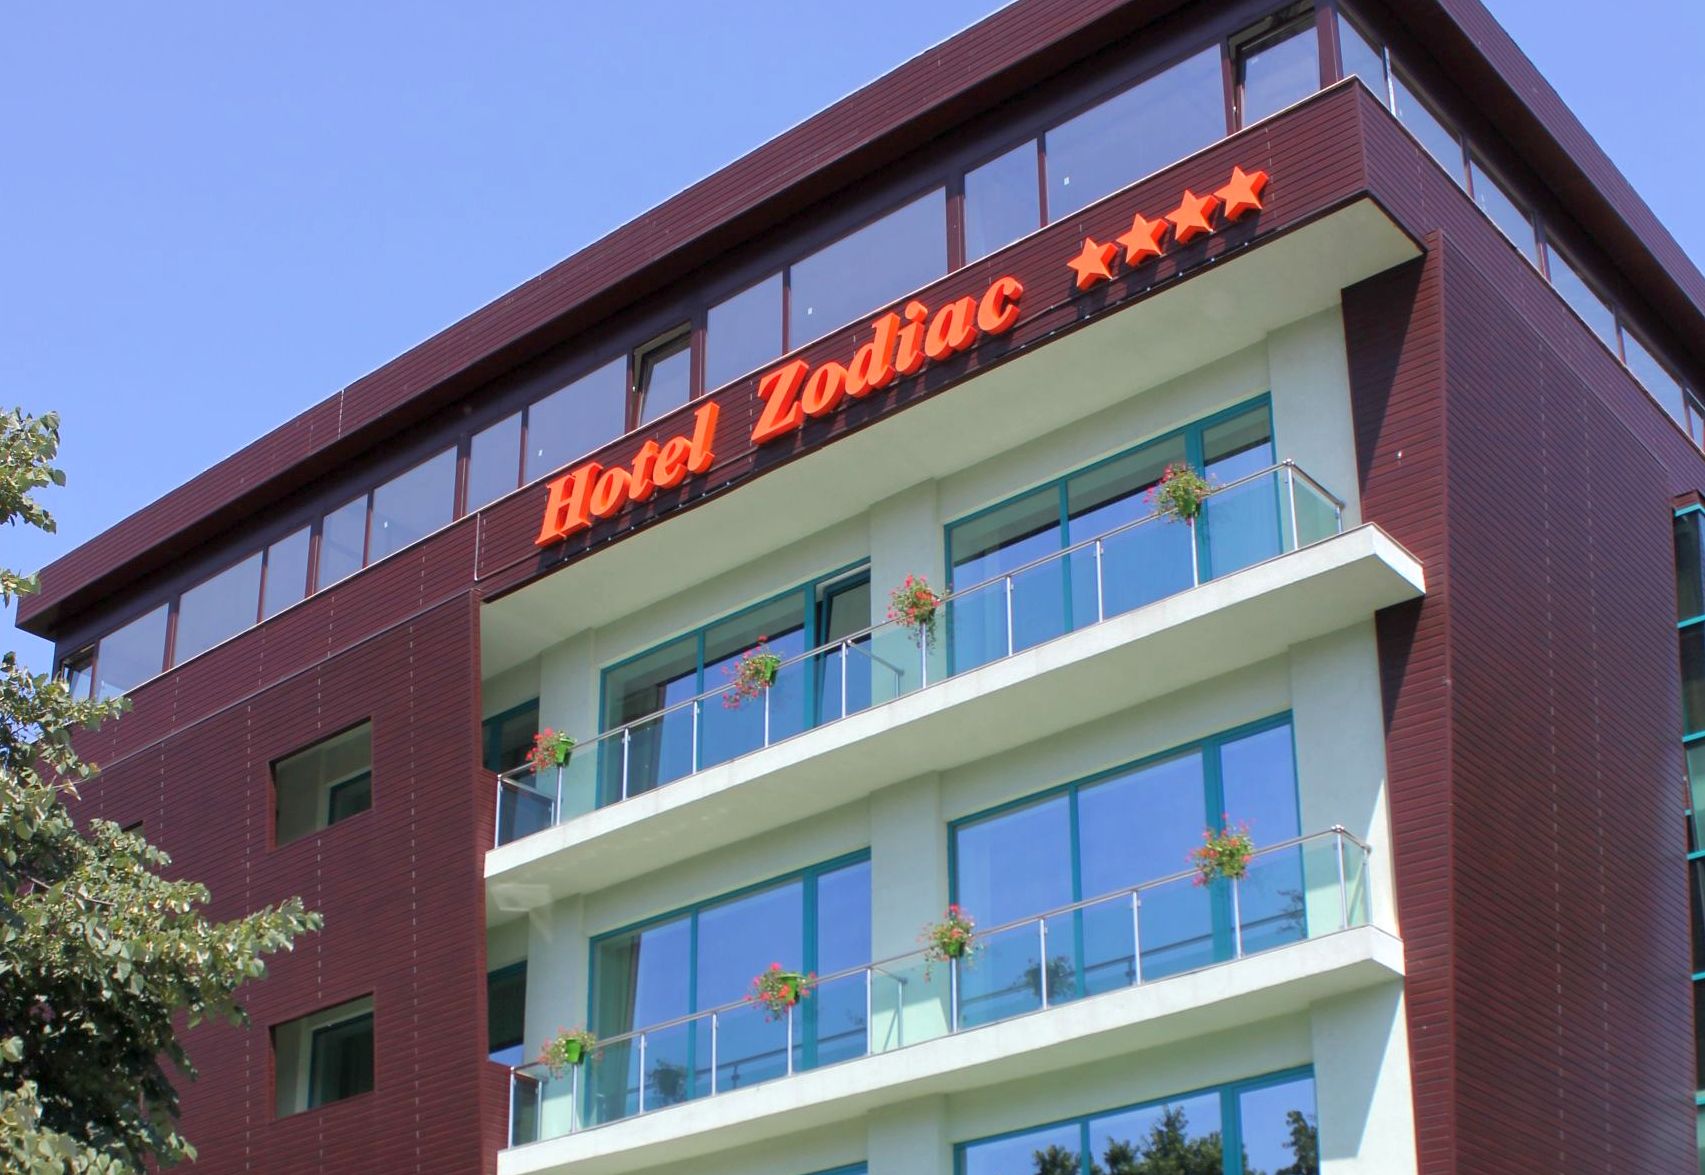 Hotelul Zodiac din Constanţa, scos la vânzare pentru cinci milioane de euro - 1-1715080307.jpg